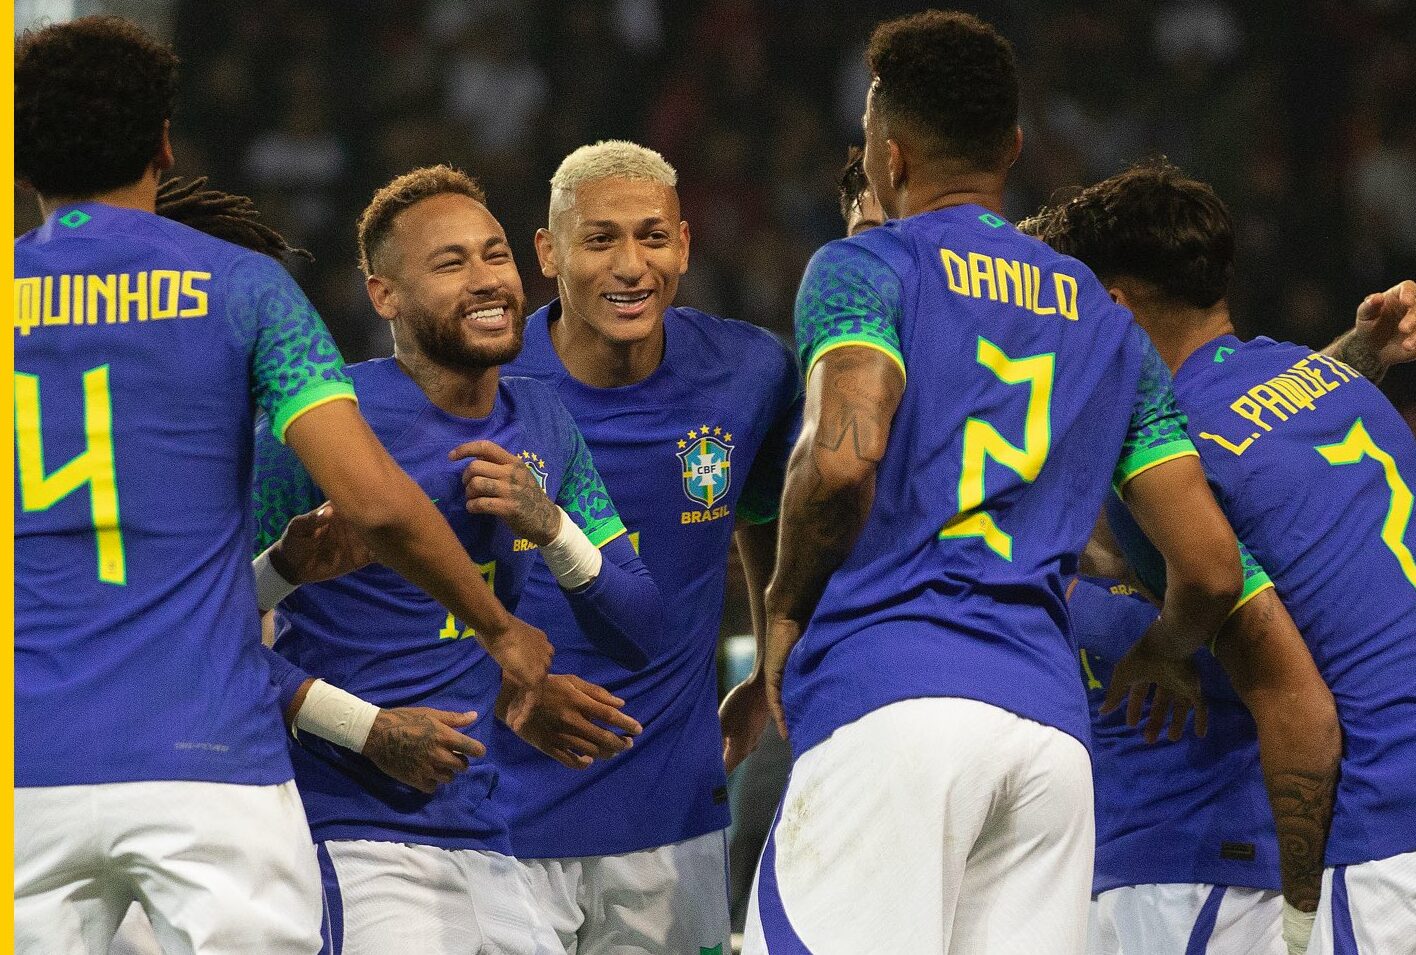 Tite confirma retorno de Neymar para o jogo contra a Coreia do Sul